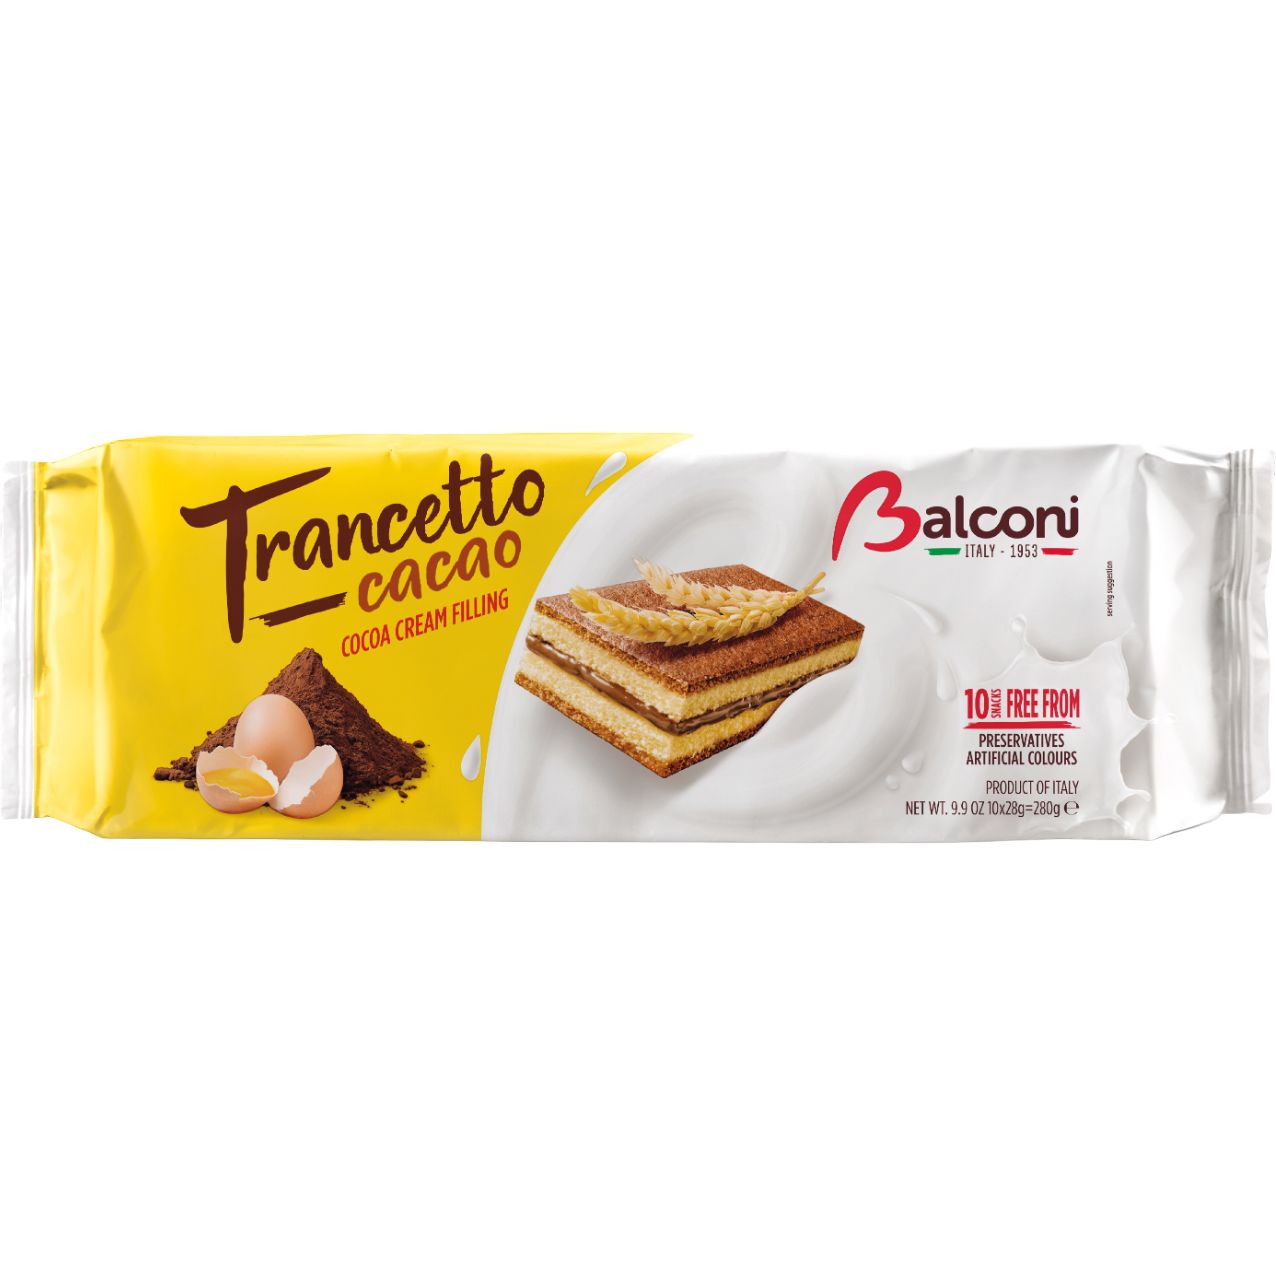 Міні бісквіти Balconi Trancetto cacao 280 г - фото 1